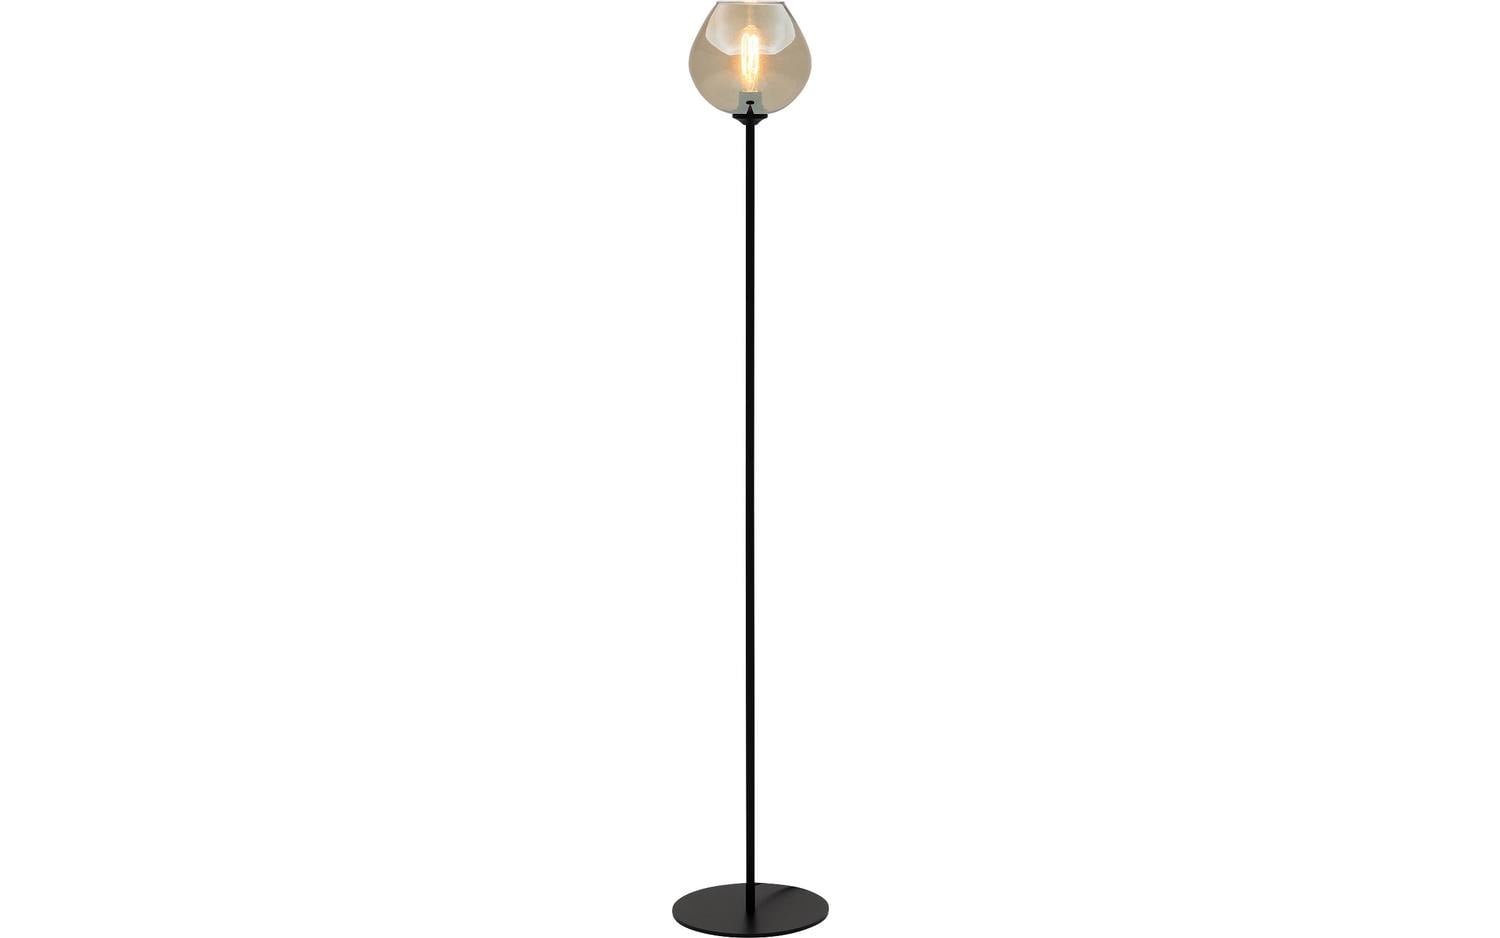 Goossens Vloerlamp Devant, Vloerlamp met 1 lichtpunt 150 cm